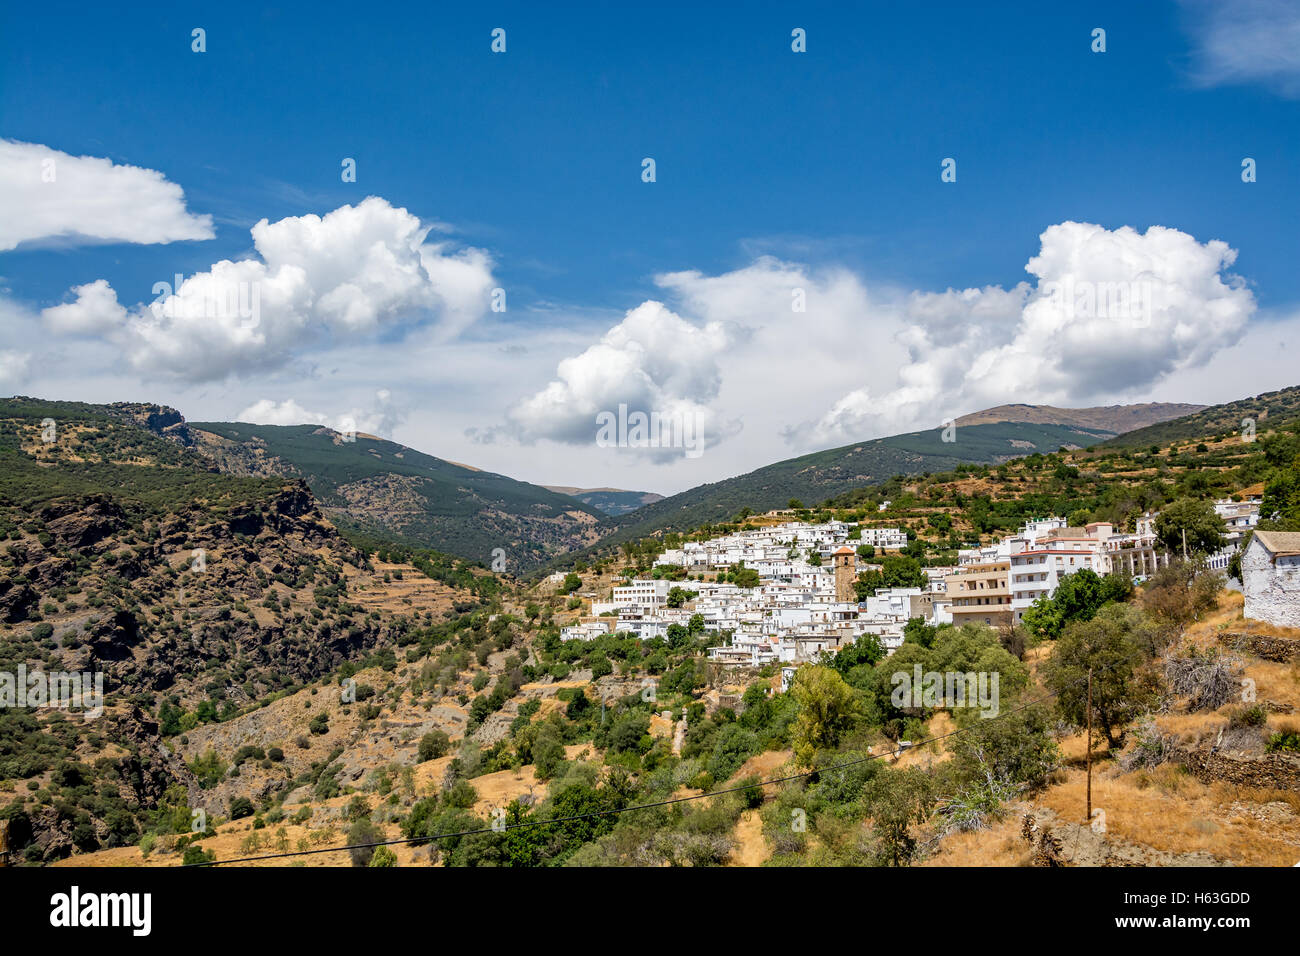 Avis de Bayárcal, le plus haut situé dans la ville de Sierra Nevada avec les montagnes pittoresques, la région d'Almeria, Espagne Banque D'Images